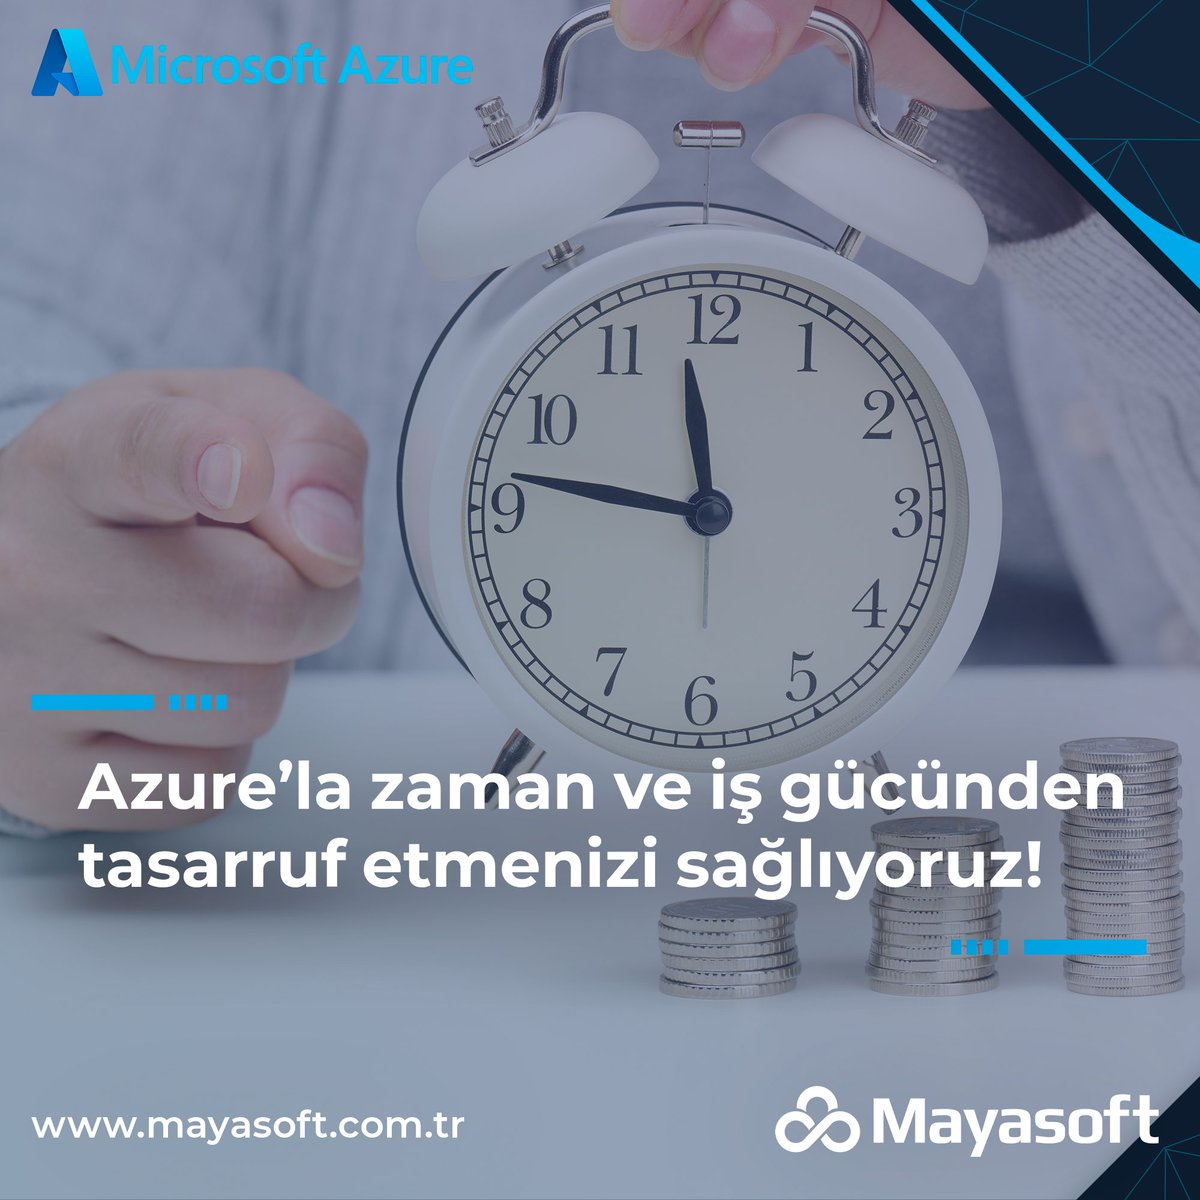 Microsoft Azure'un Platform as a Service (PaaS) hizmeti, kullanıcıların uygulama geliştirme süreçlerini kolaylaştıran bir çözümdür.

Gecikmeden bizimle iletişime geçin; mayasoft.com.tr  📩Mail: info@mayasoft.com.tr

#bulutbilişim #btaltyapısı #azure